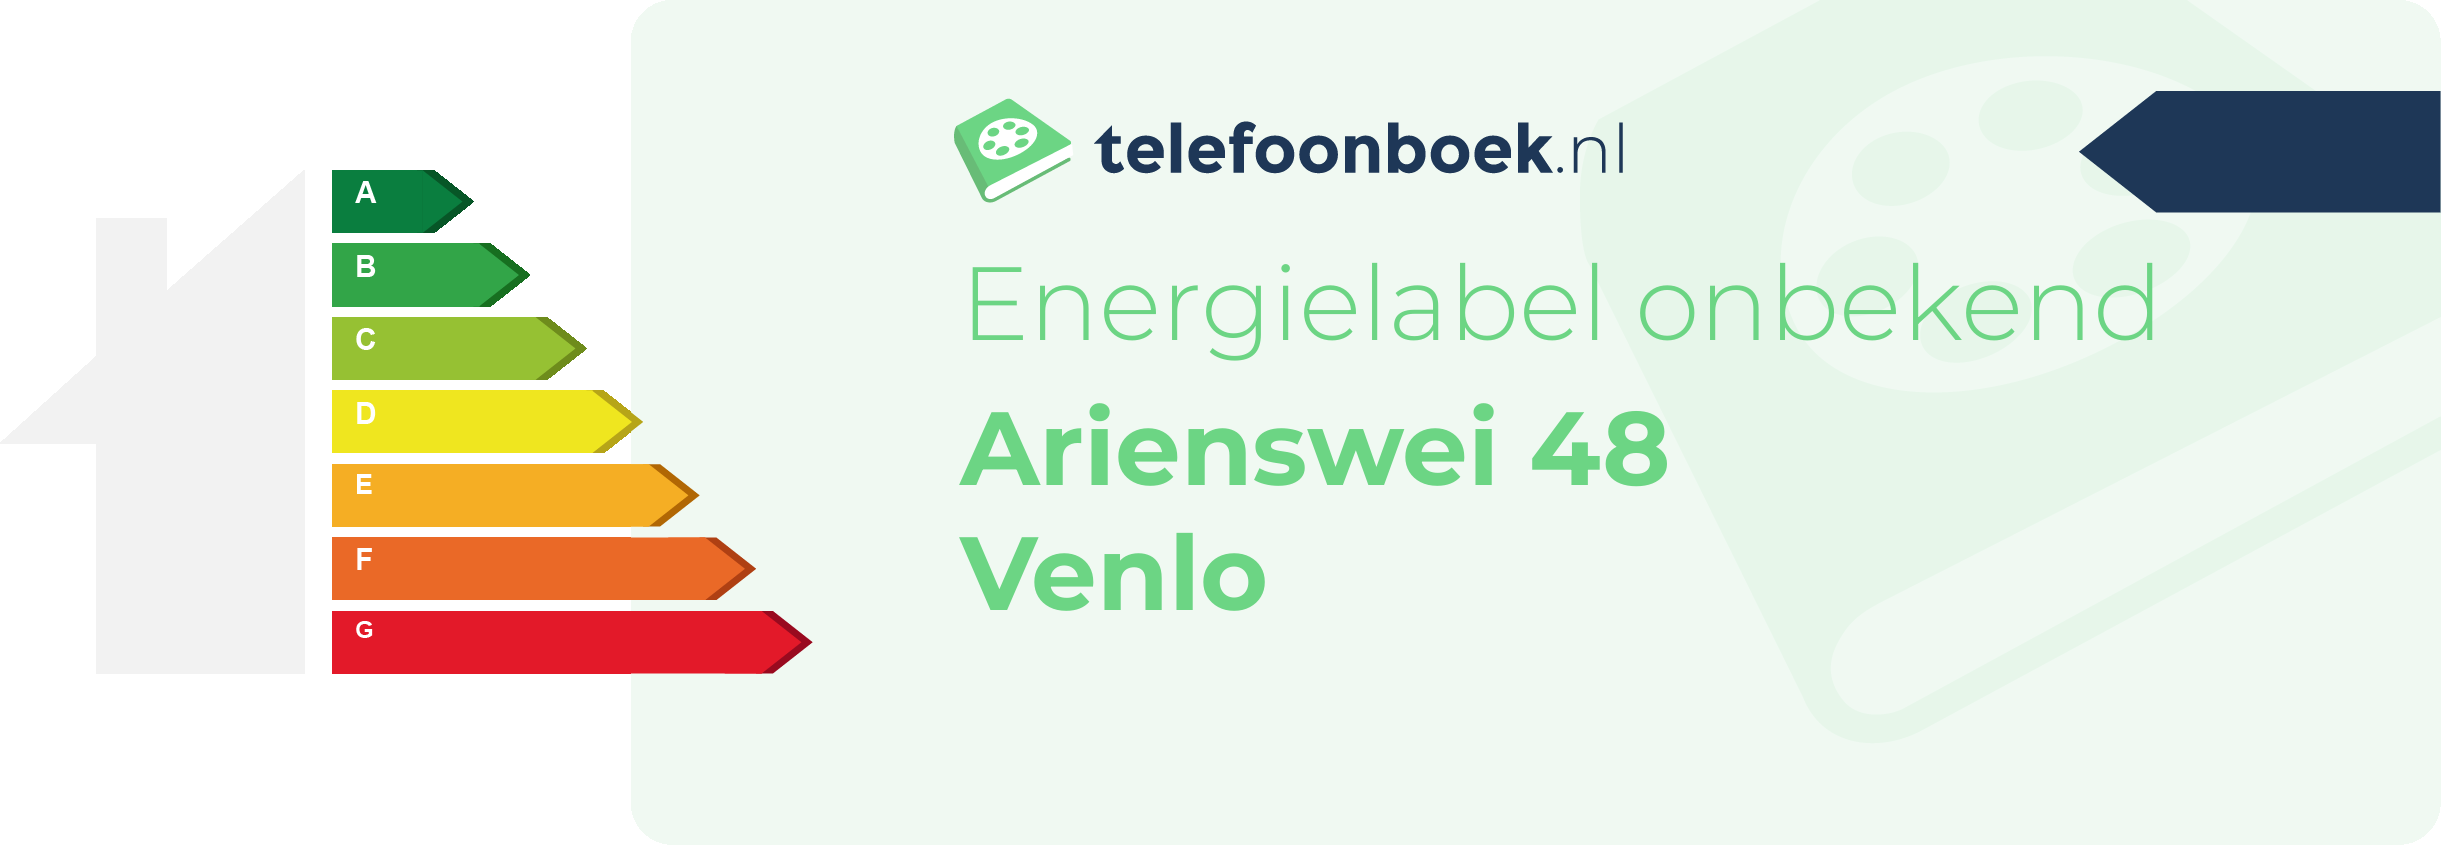 Energielabel Arienswei 48 Venlo